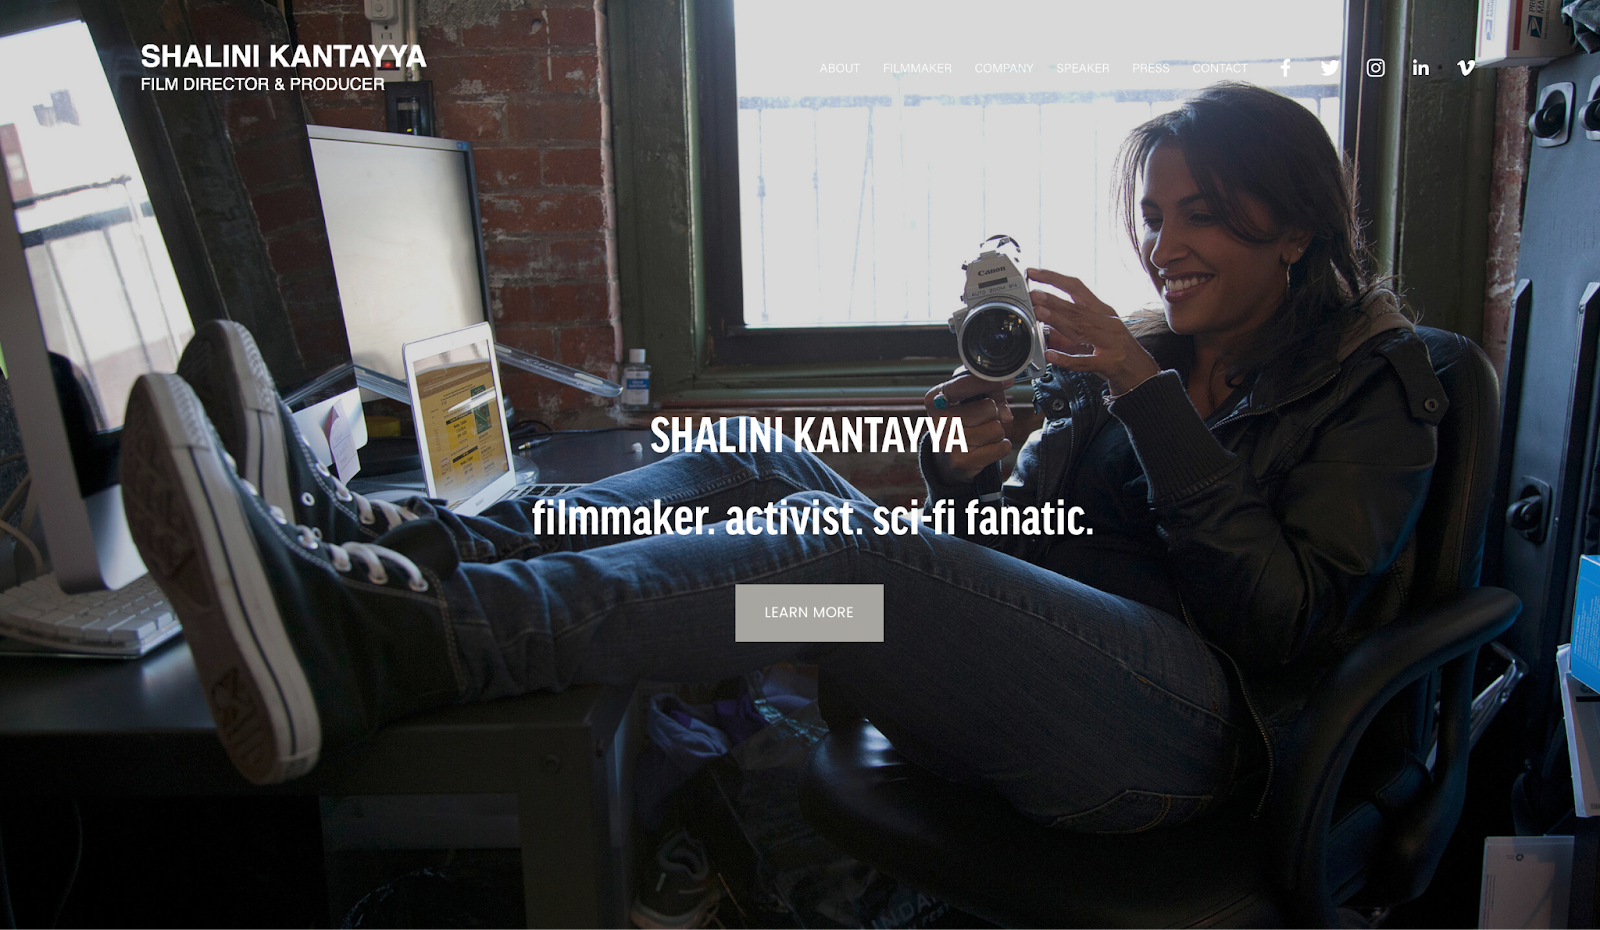 filmmaker website example, Shalini Kantayya